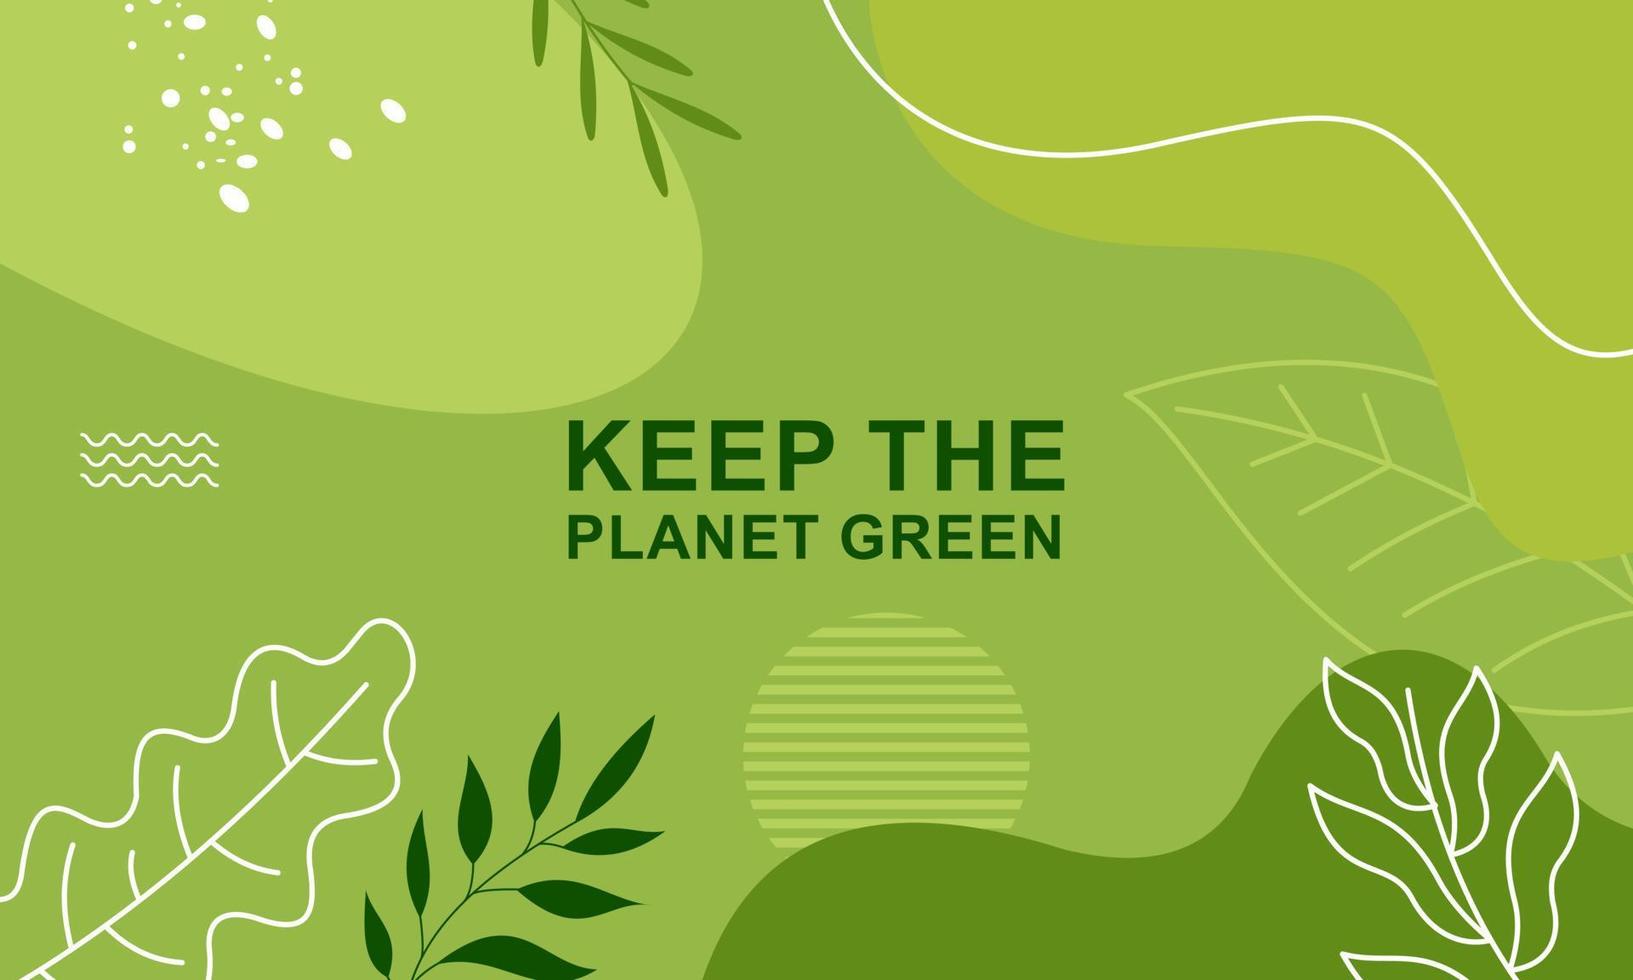 Poster zum Tag der Erde mit grünem Hintergrund vektor